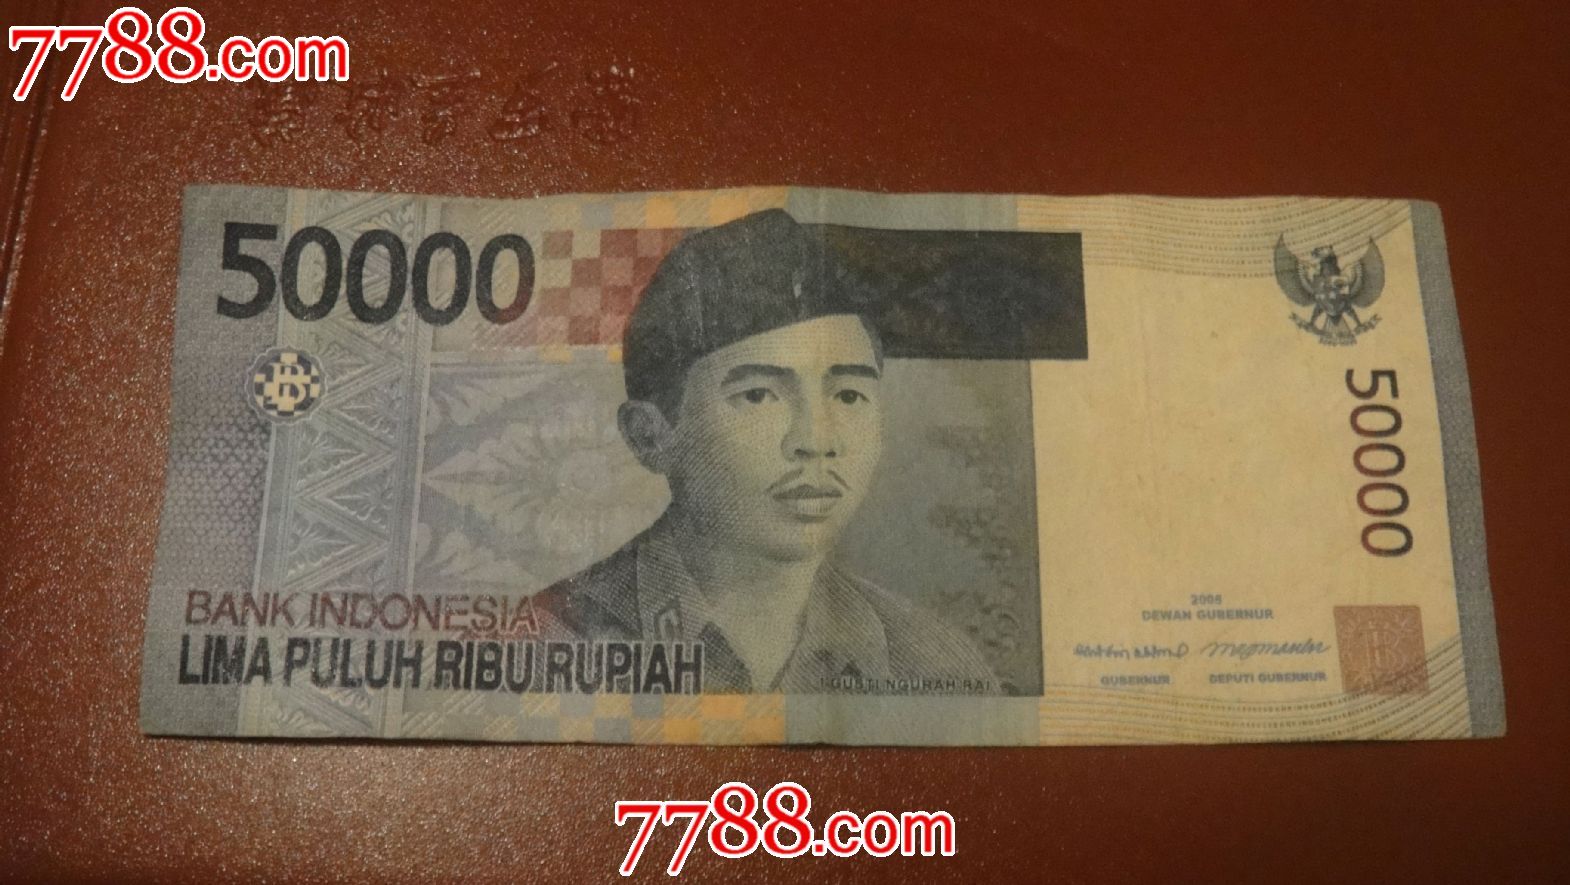 2005年版印度尼西亚50000元